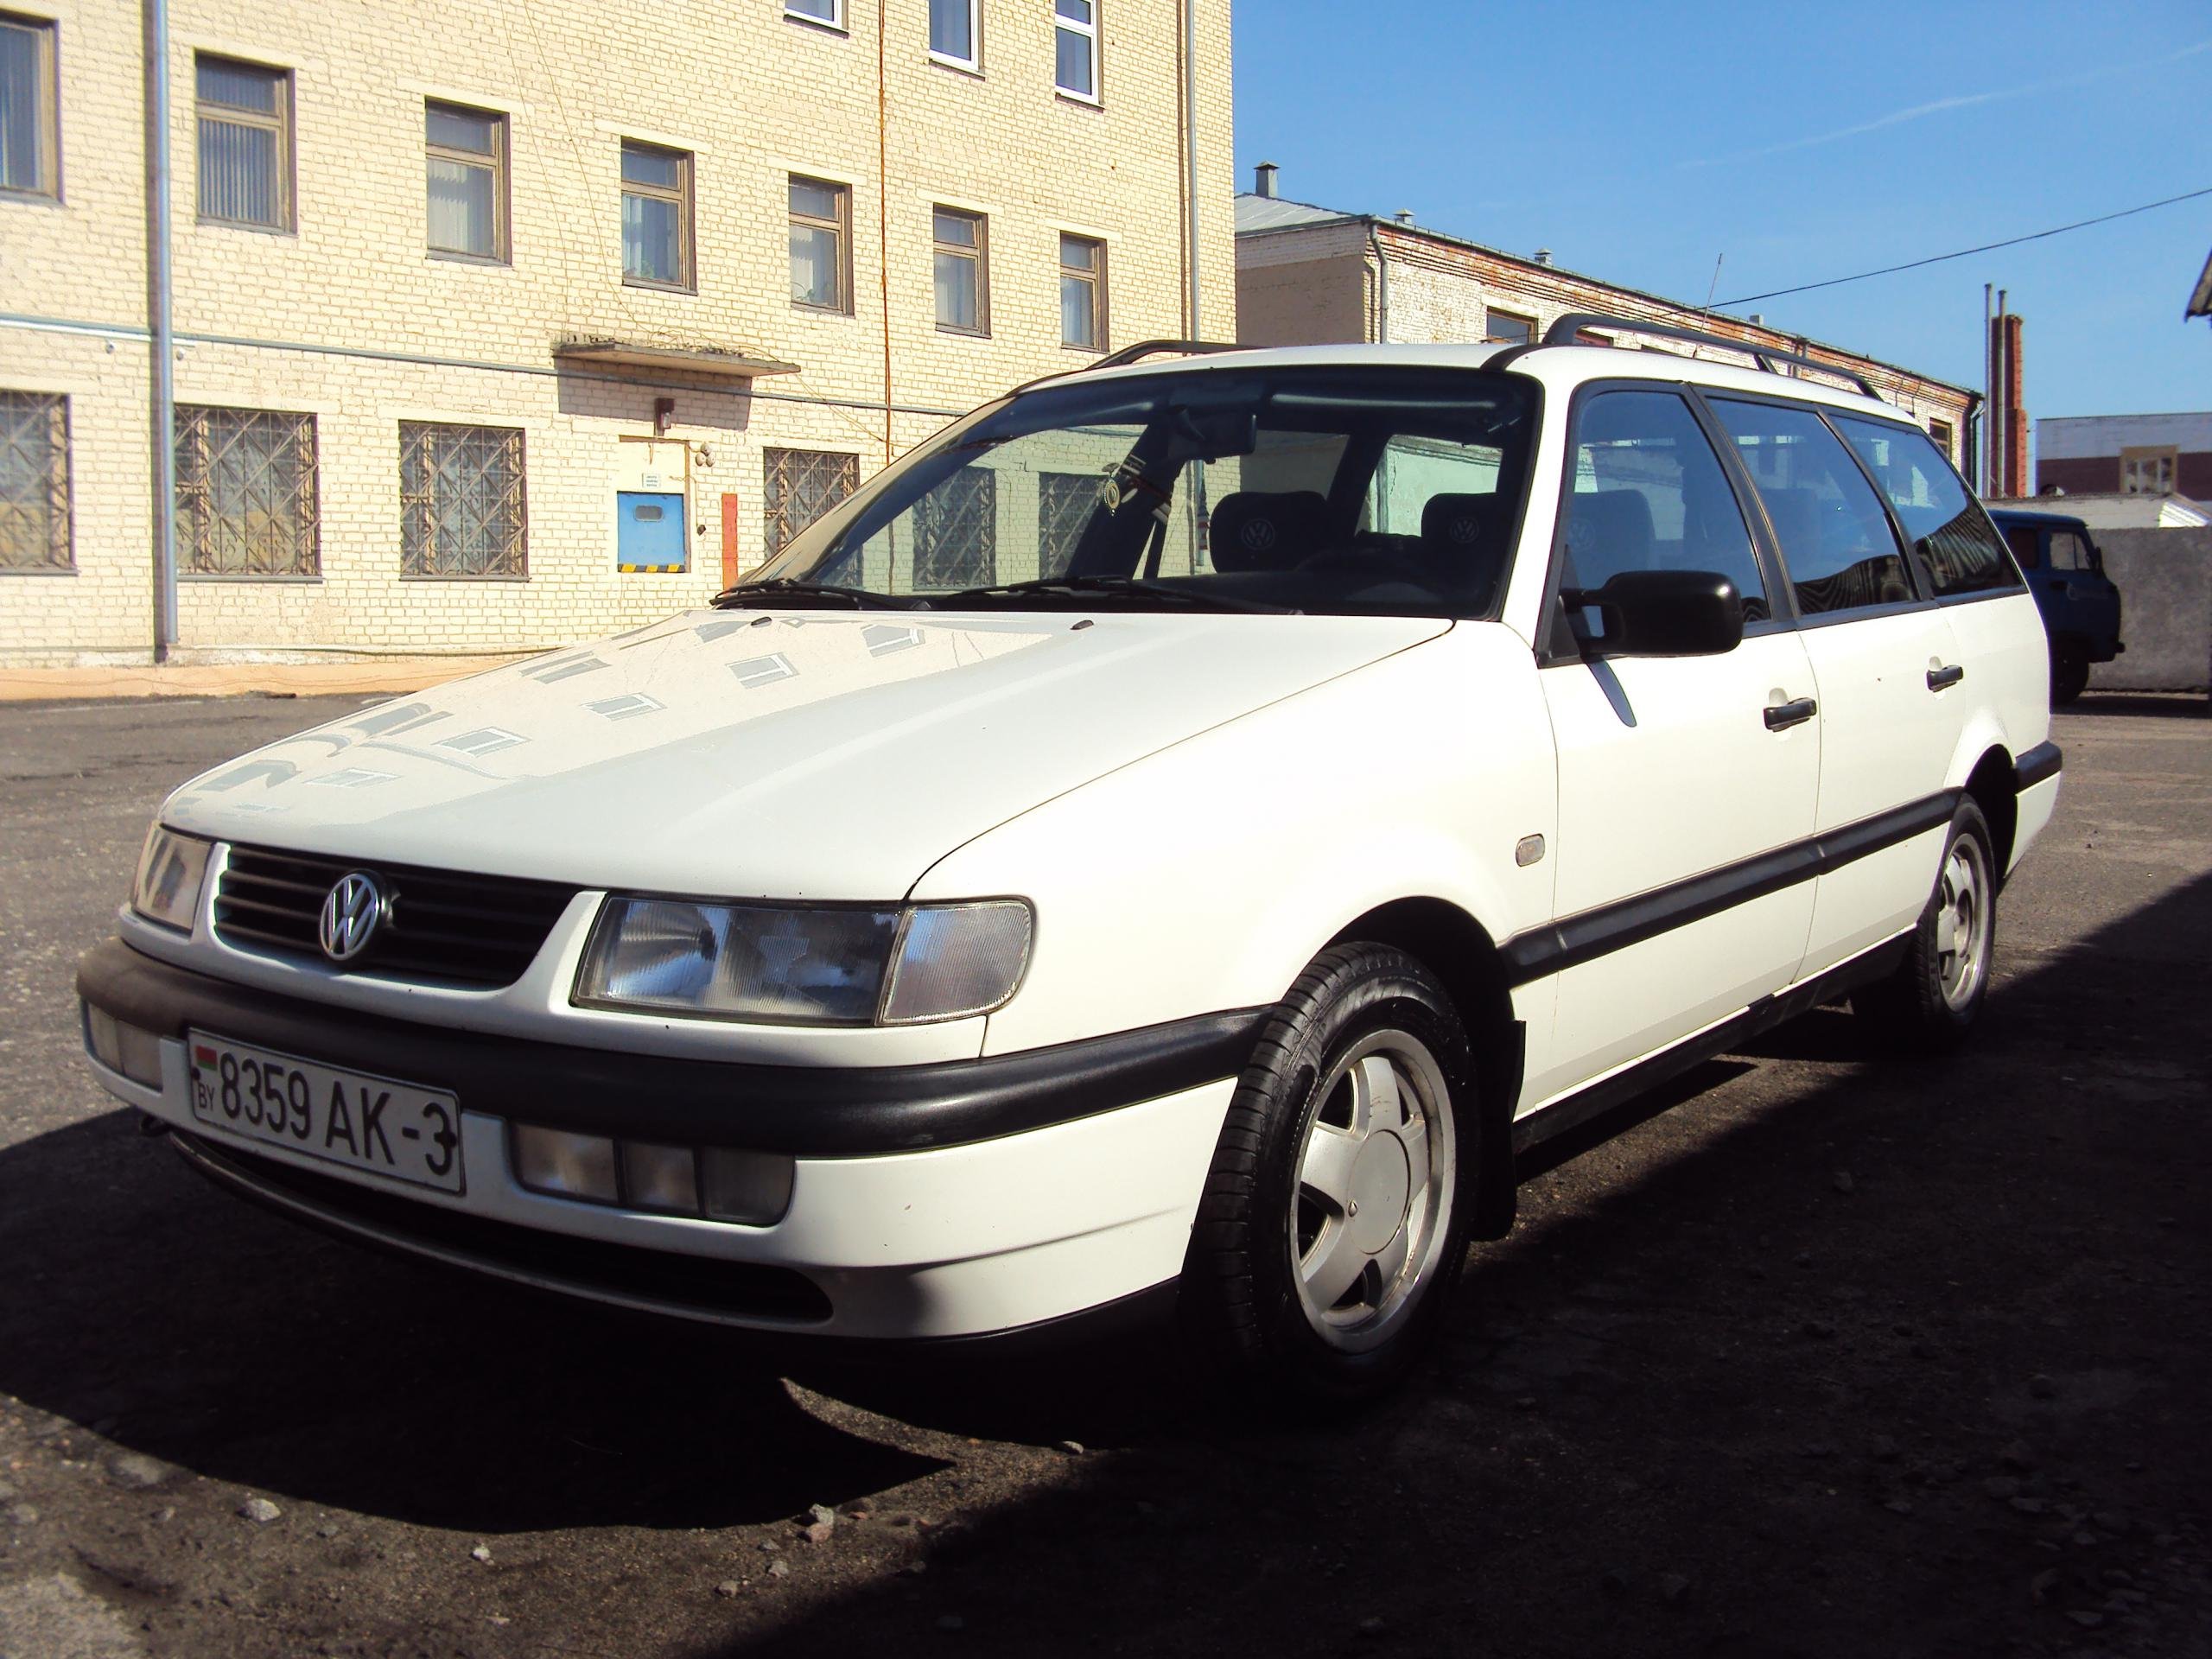 Ав бу продажа гродно. Volkswagen Passat b4 variant. Volkswagen Passat b4 универсал 1995. Фольксваген б4 универсал белый. Volkswagen Passat b4 белый универсал.